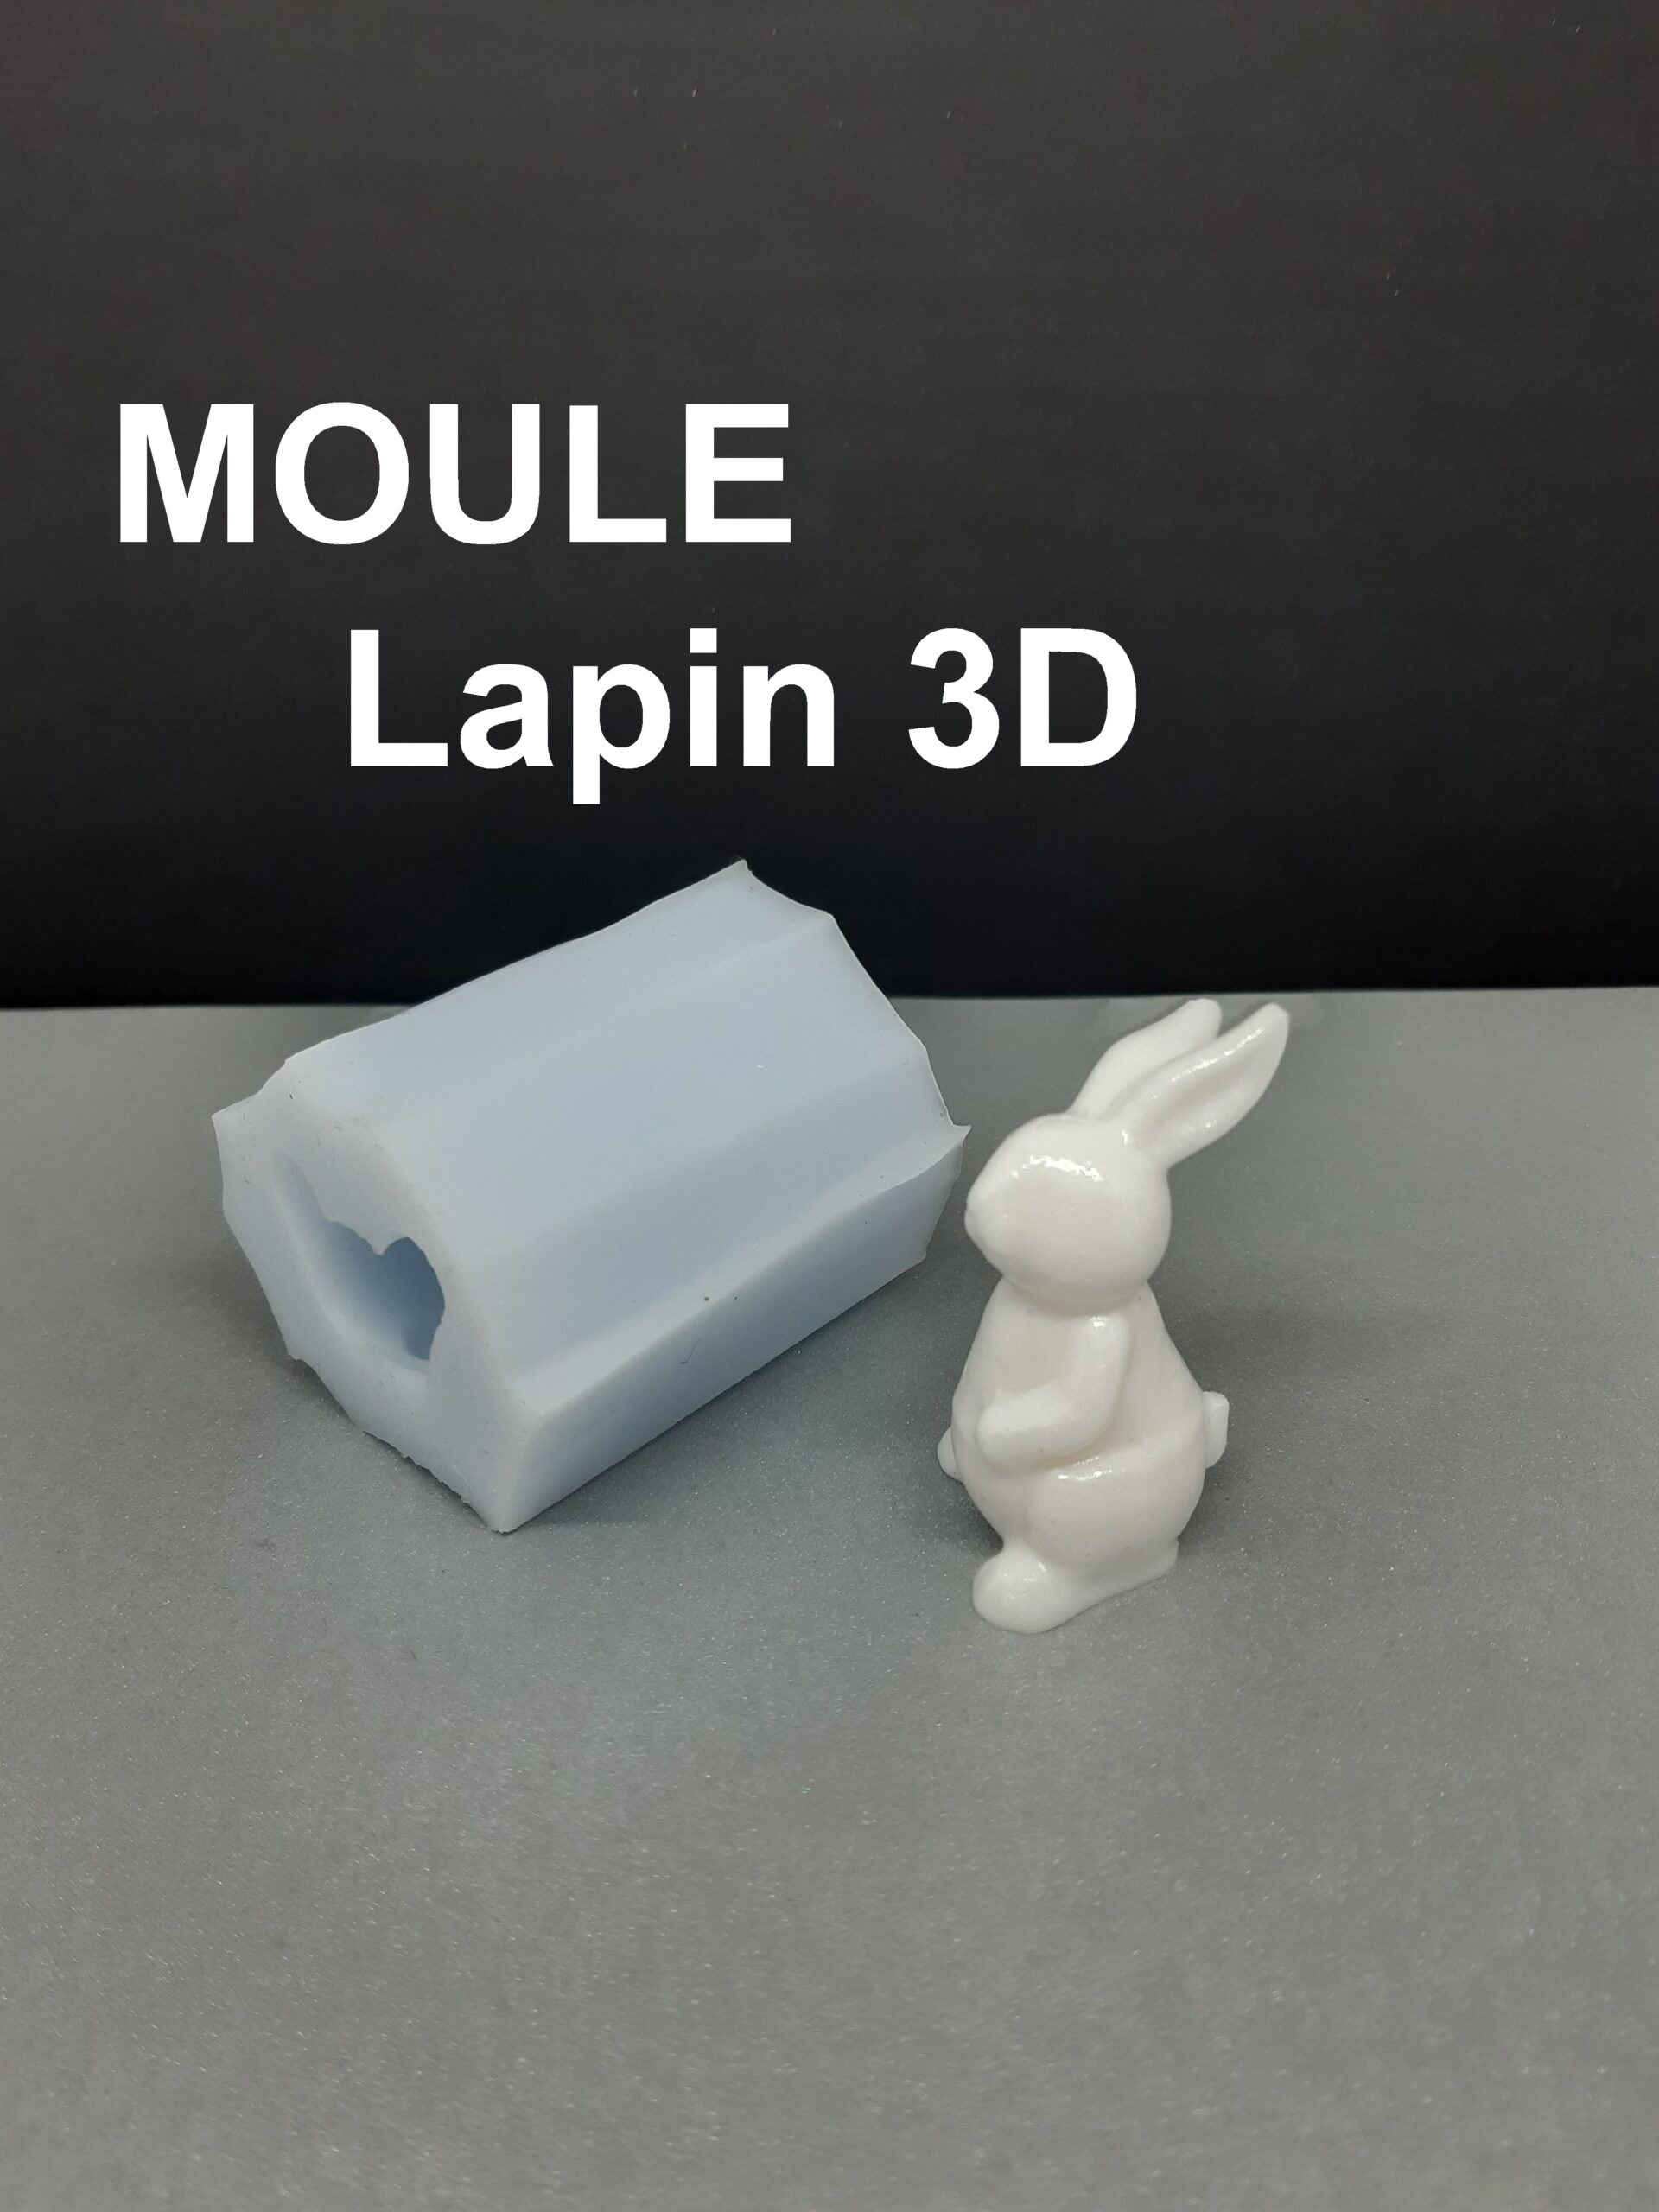 Moule Silicone Lapin 3D] - L'Echo Market